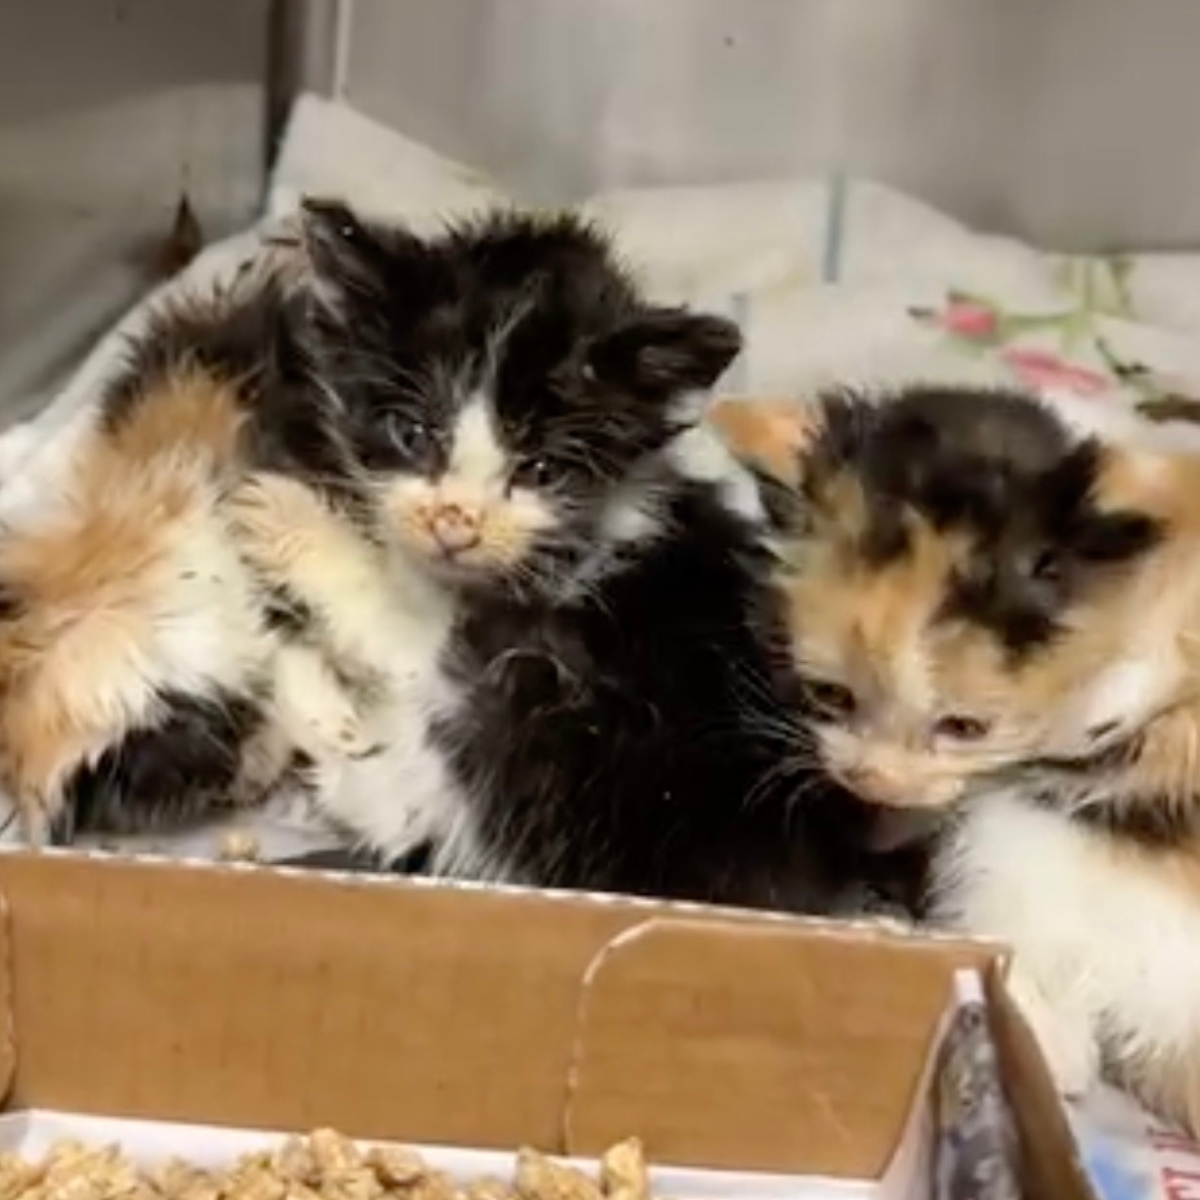 shelter kittens